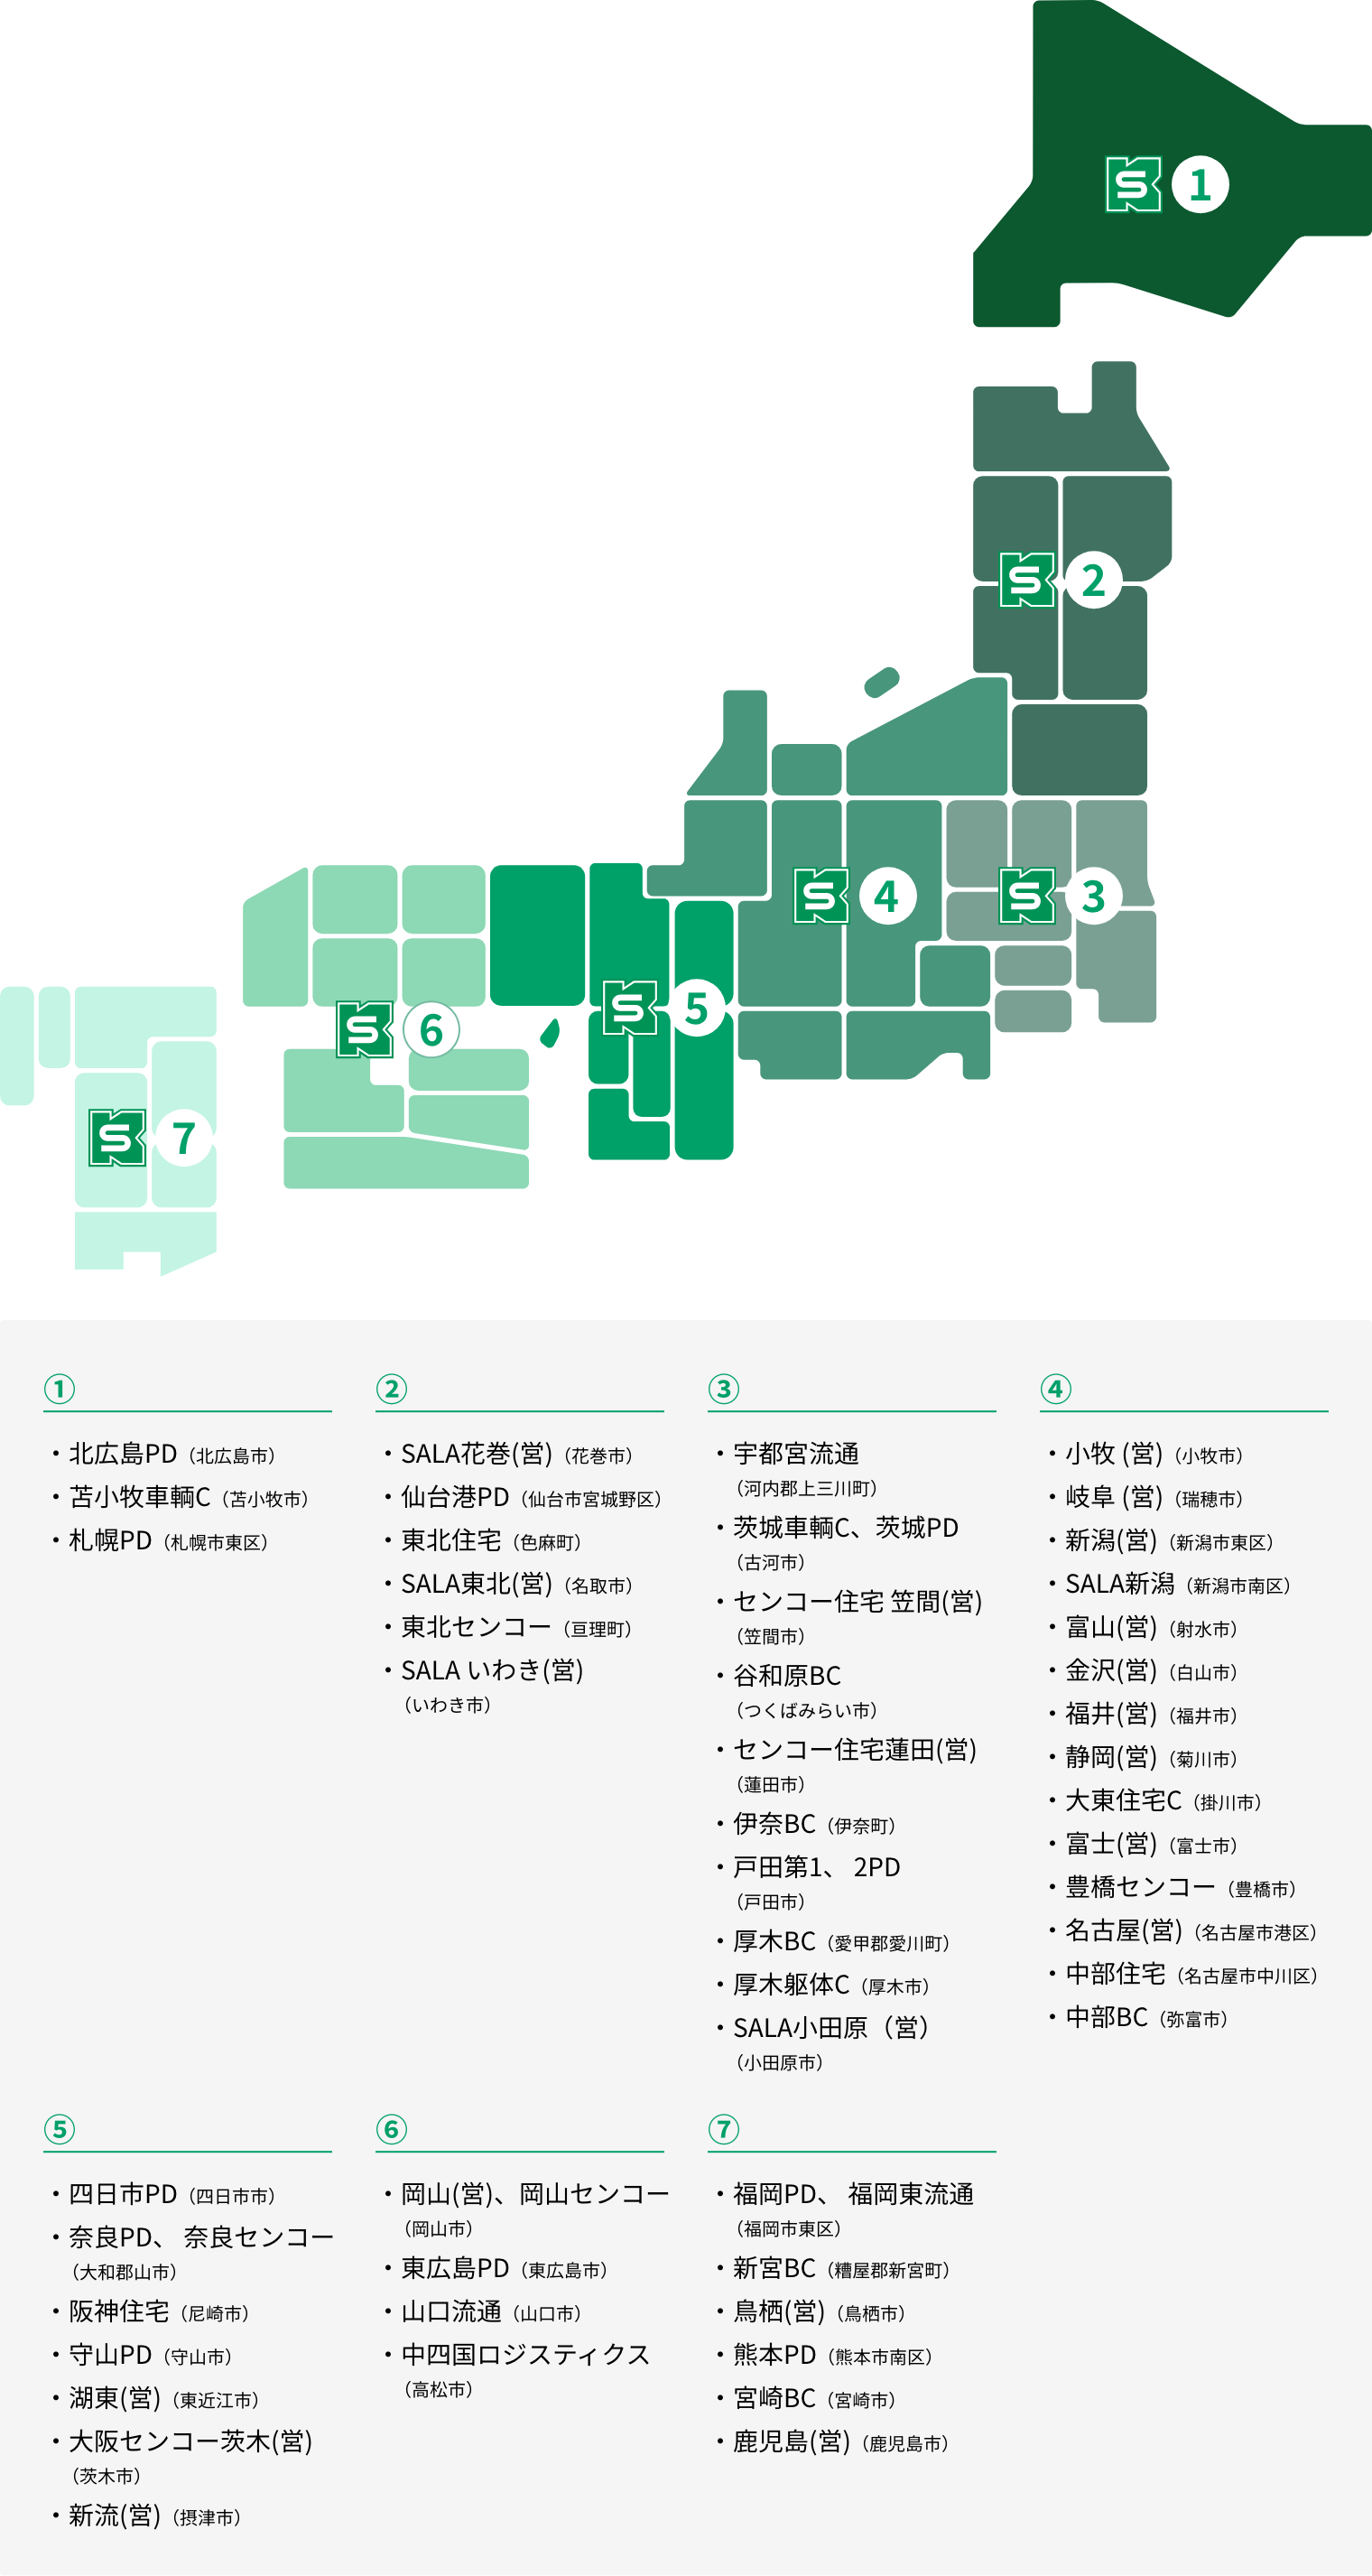 住宅物流倉庫がある場所を日本地図で示している図説です。